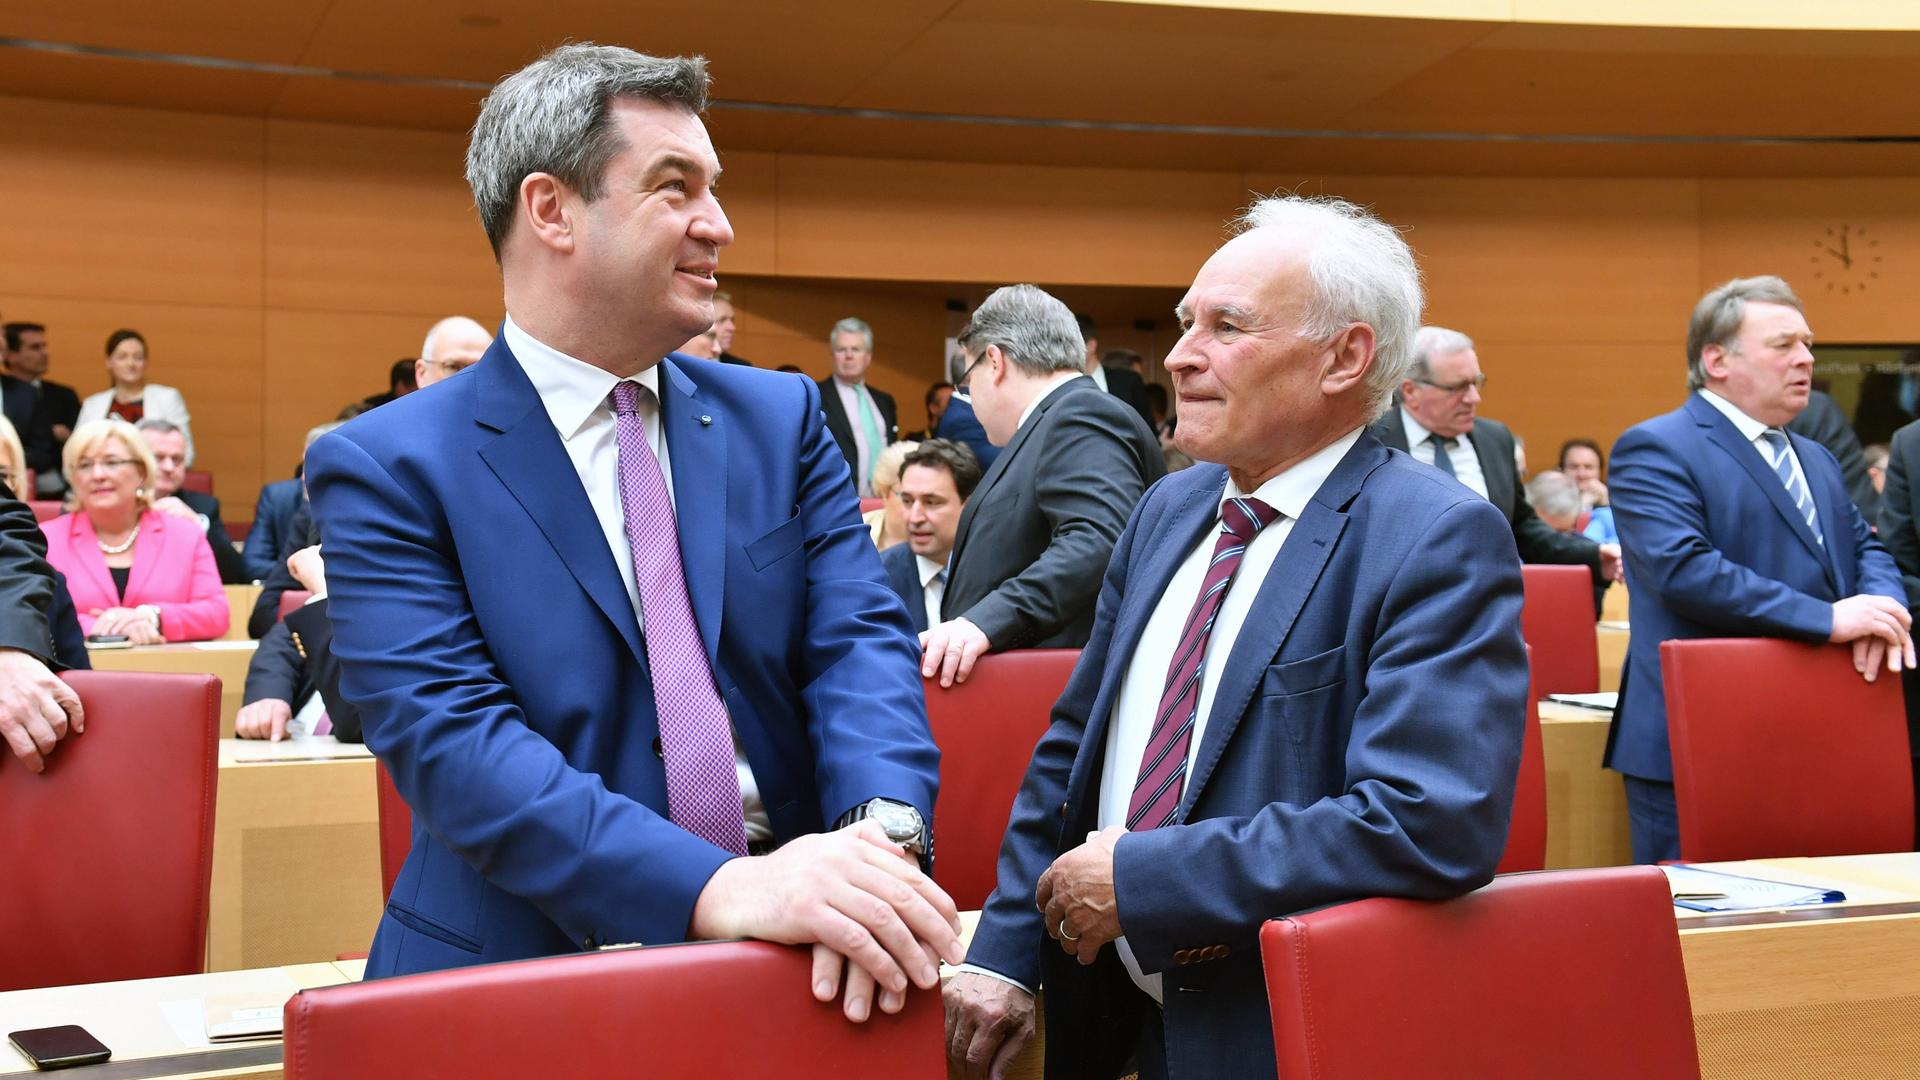 Bayerns Ministerpräsident Markus Söder steht neben dem ehemaligen CSU-Vorsitzenden Erwin Huber in einem Parlamentsaal. Söder legt die Hände auf einen Stuhl und blickt in die Ferne, Huber an ihm vorbei.